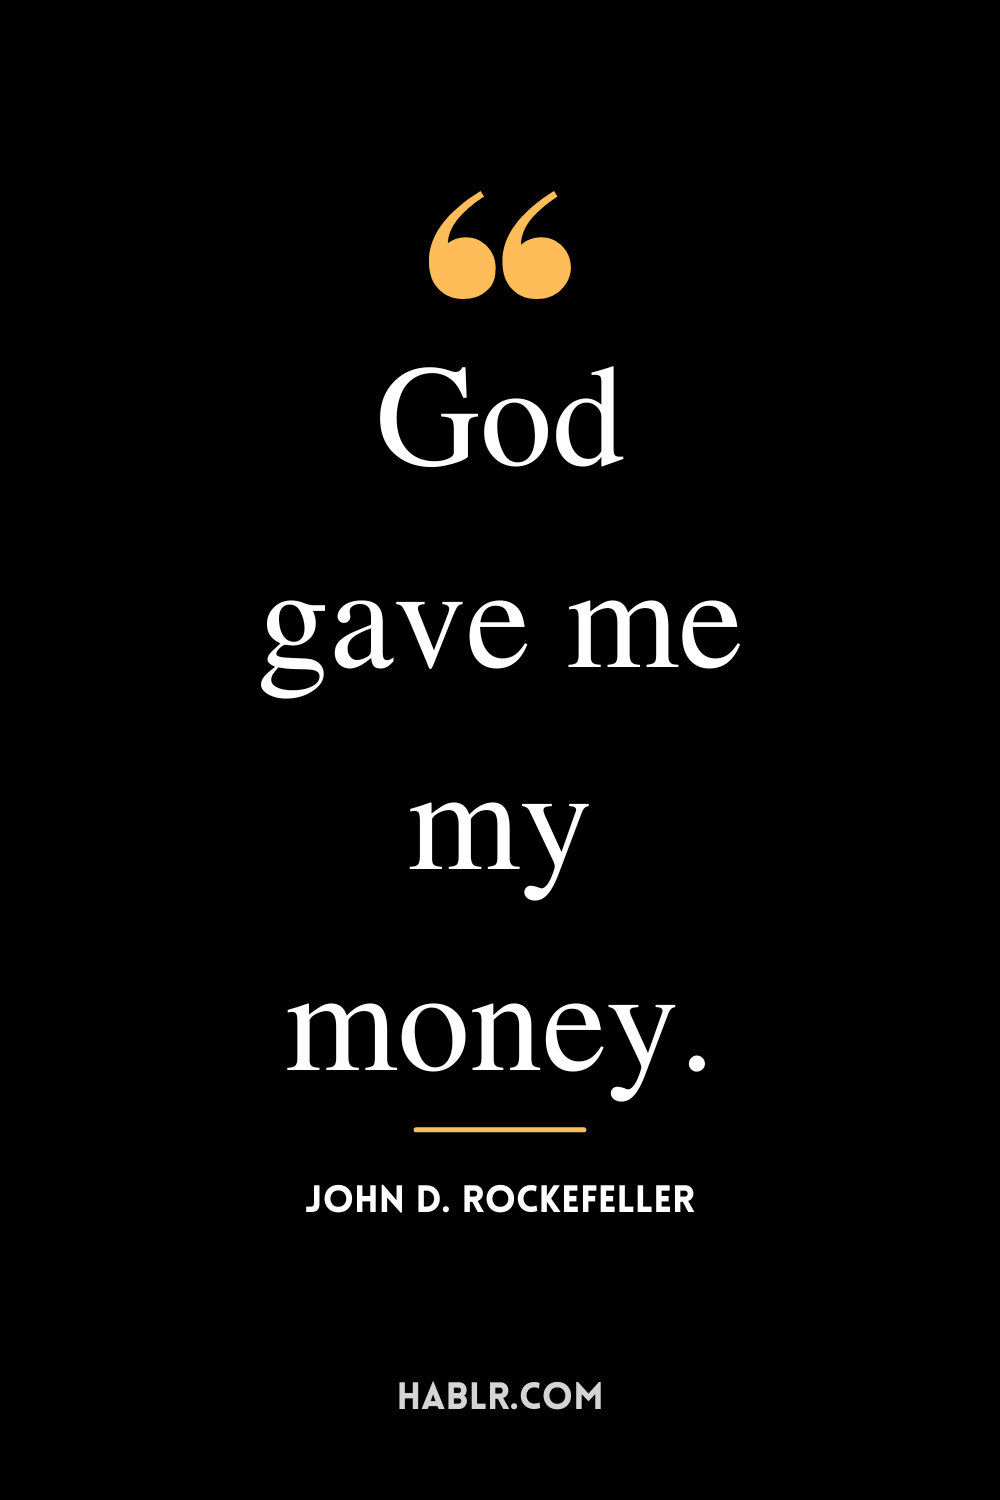 “God gave me my money.” -John D. Rockefeller